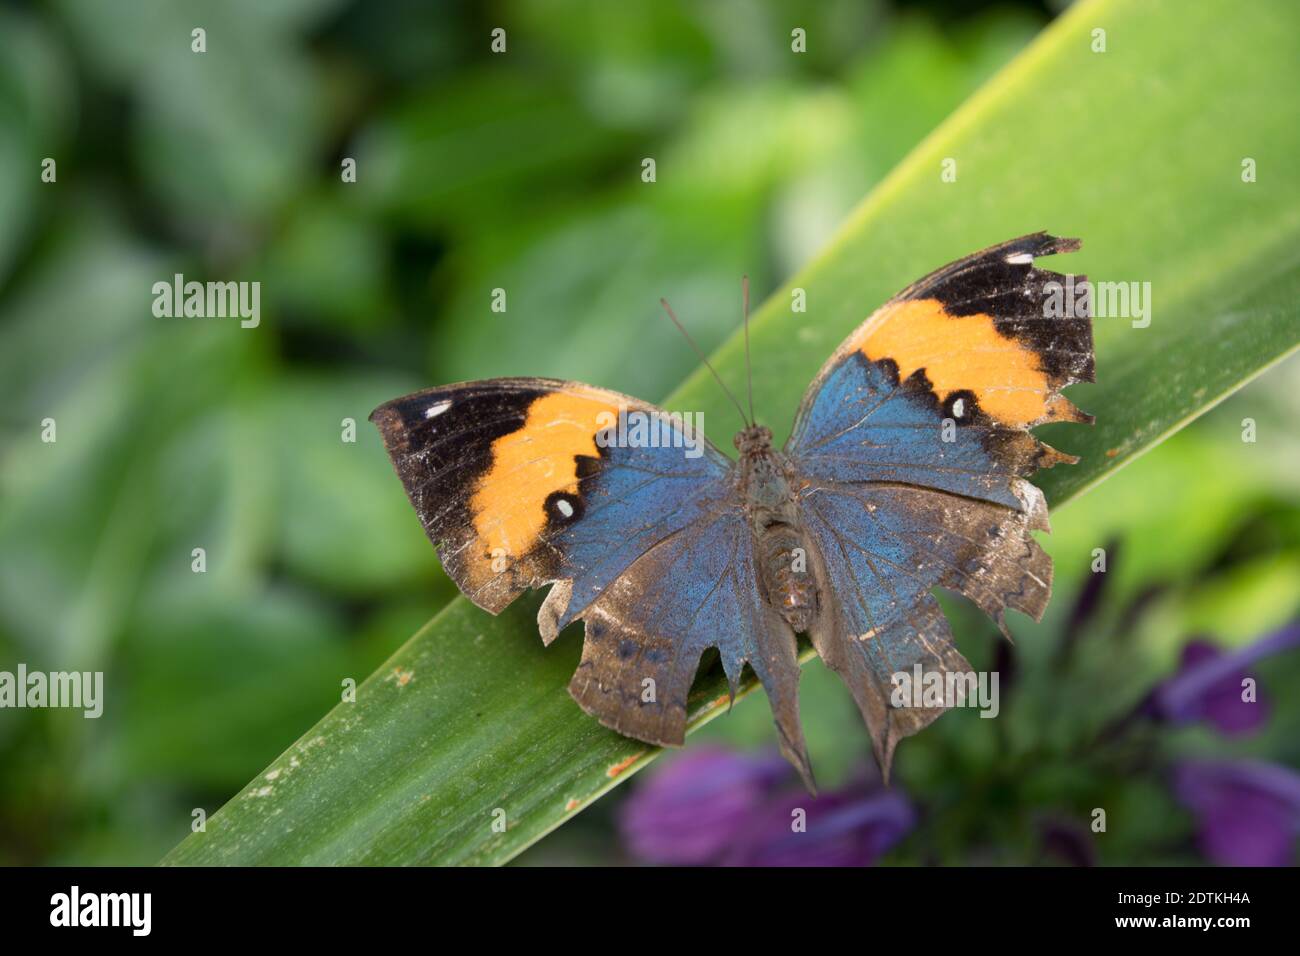 Butterfly On Leaf - Indisches Blatt Mit Leider Ramponierten Flügeln Stock Photo